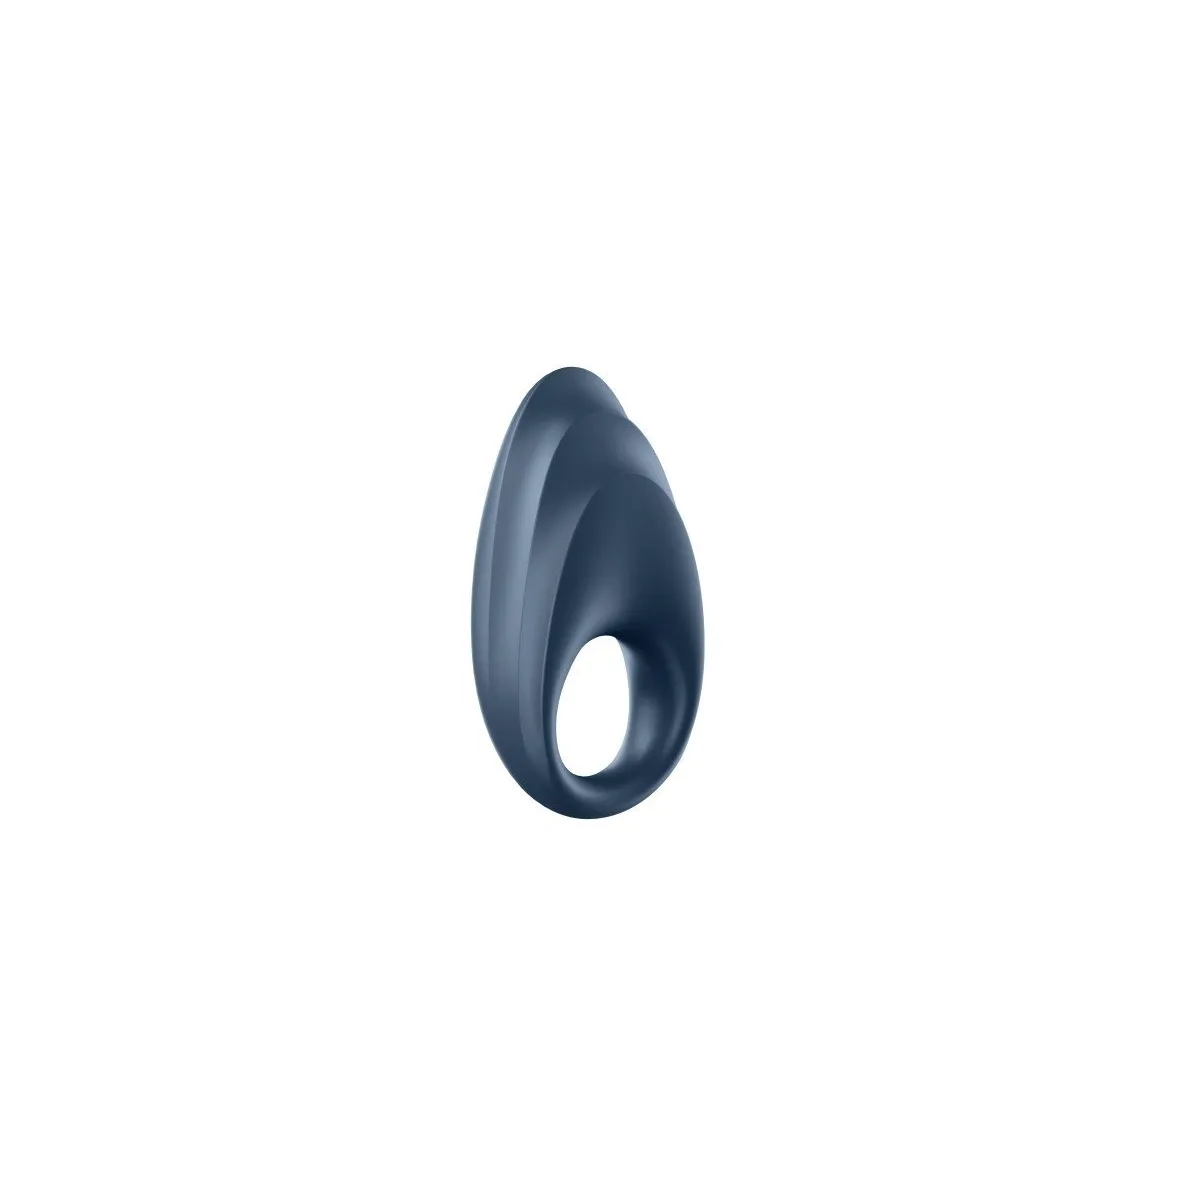 Potente anillo de pene conectado con un anillo